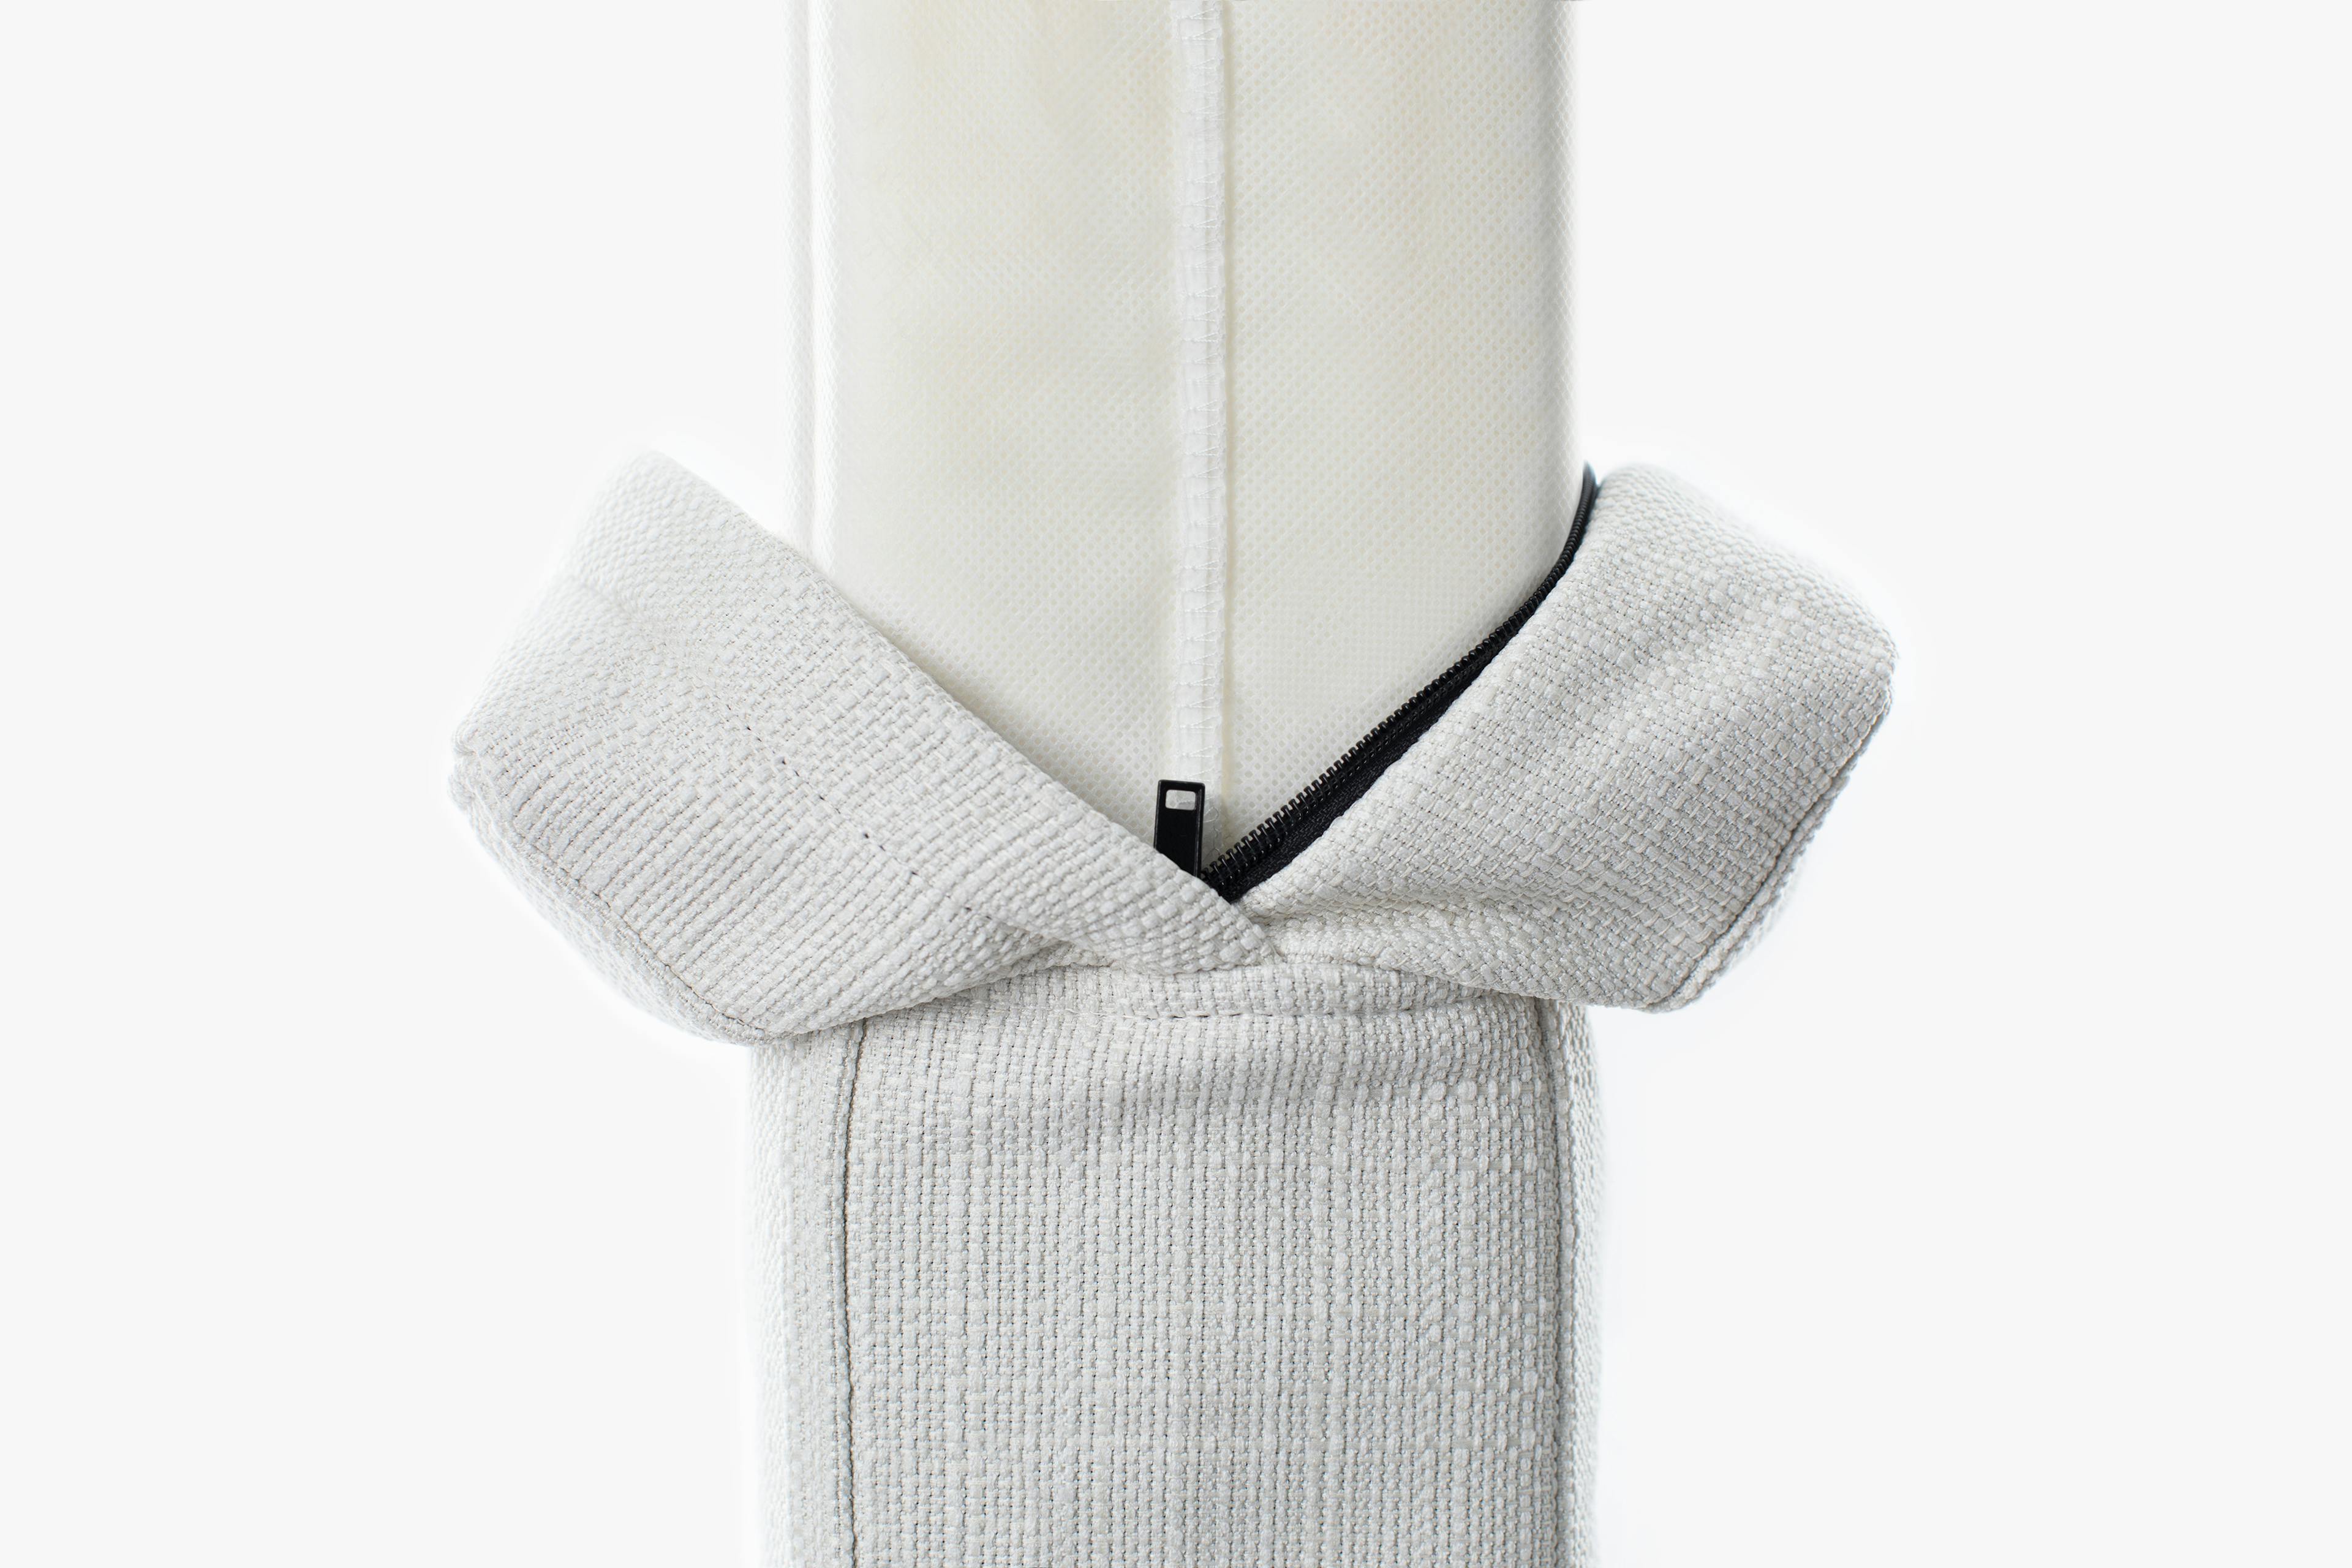 PDP Image: Pillowboard Cover (Linen Weave / Light Linen) - 3:2 - Unzipped